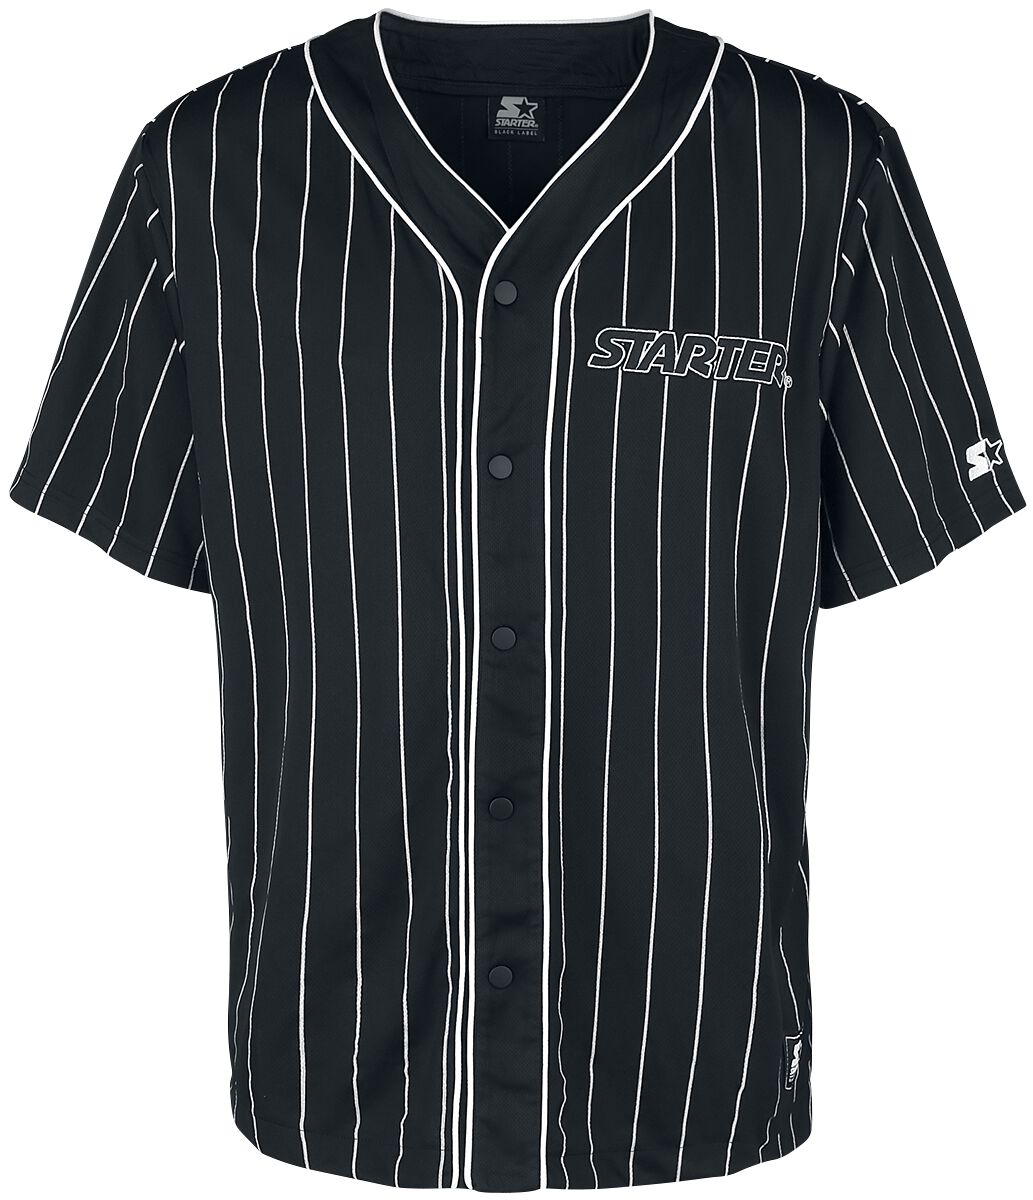 Starter Kurzarmhemd - Baseball Jersey - S bis XL - für Männer - Größe L - schwarz